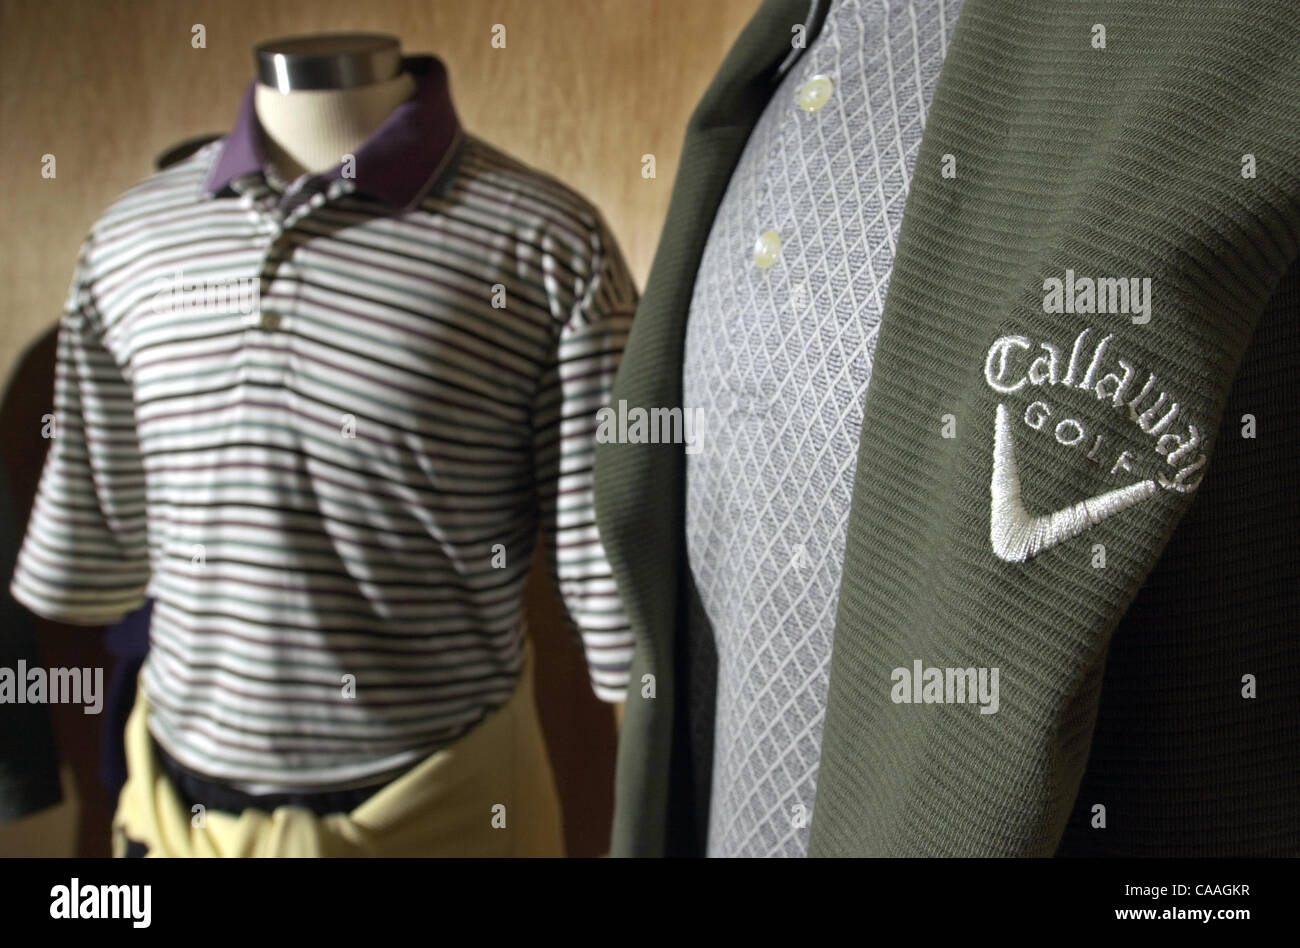 Publicada 29/03/2003; C-1:1,2,6,7) SLashworth202736x002/Mar 27---Estos son  un par de ejemplos de la colección de Ashworth línea de ropa Callaway.  Ashworth hace camisas del golf, y tiene un acuerdo de licencia con Callaway.